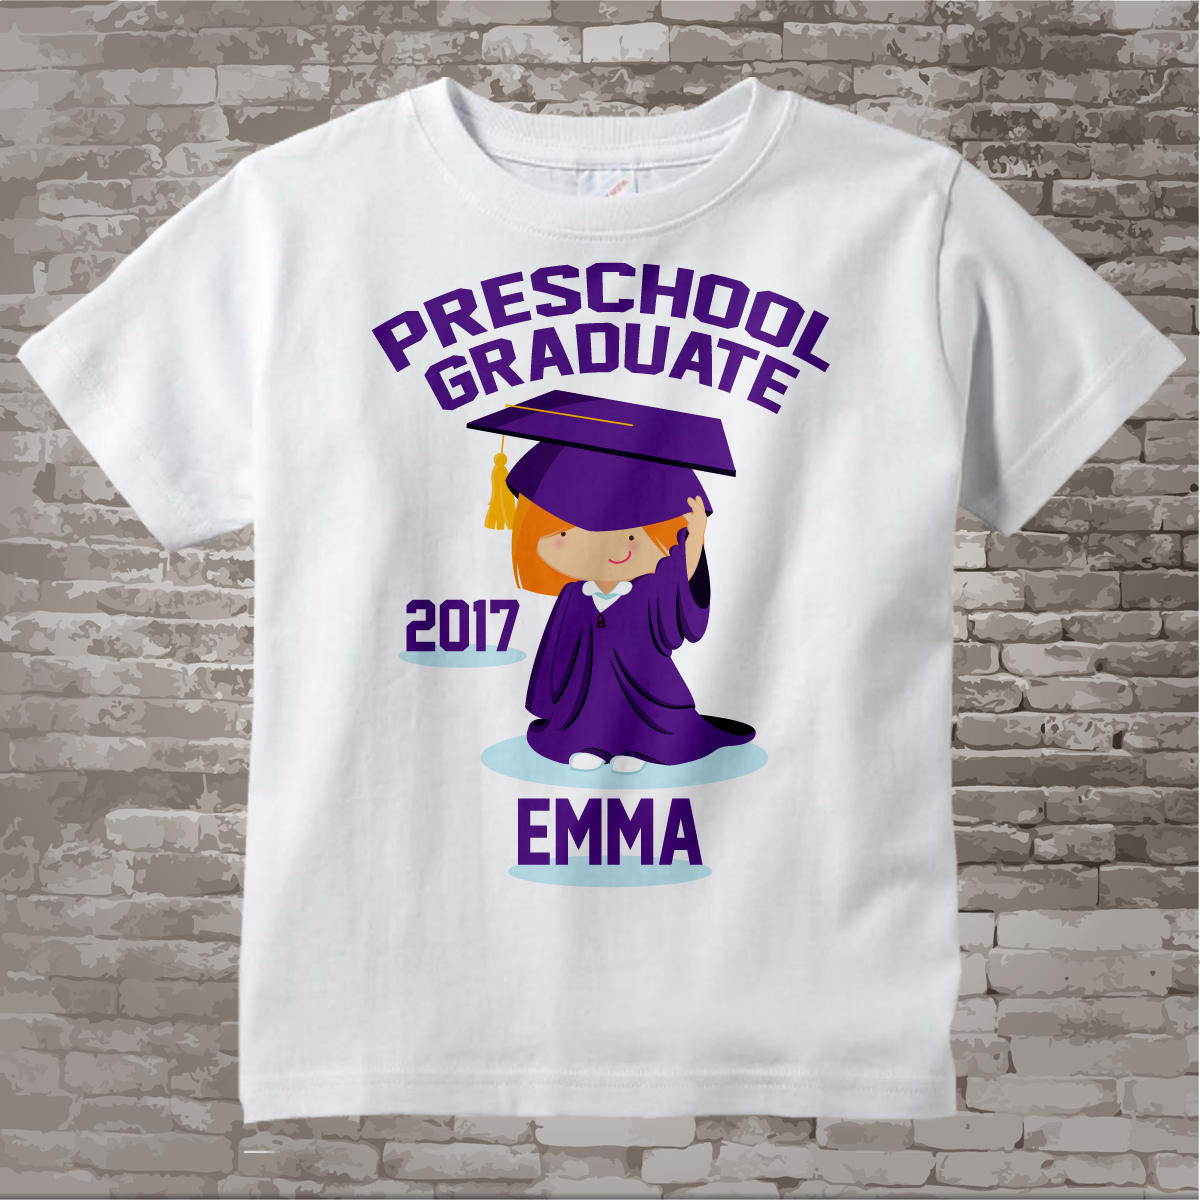 Preschool Shirt Ideas
 Preschool Graduate Shirt Preschool Graduation Shirt